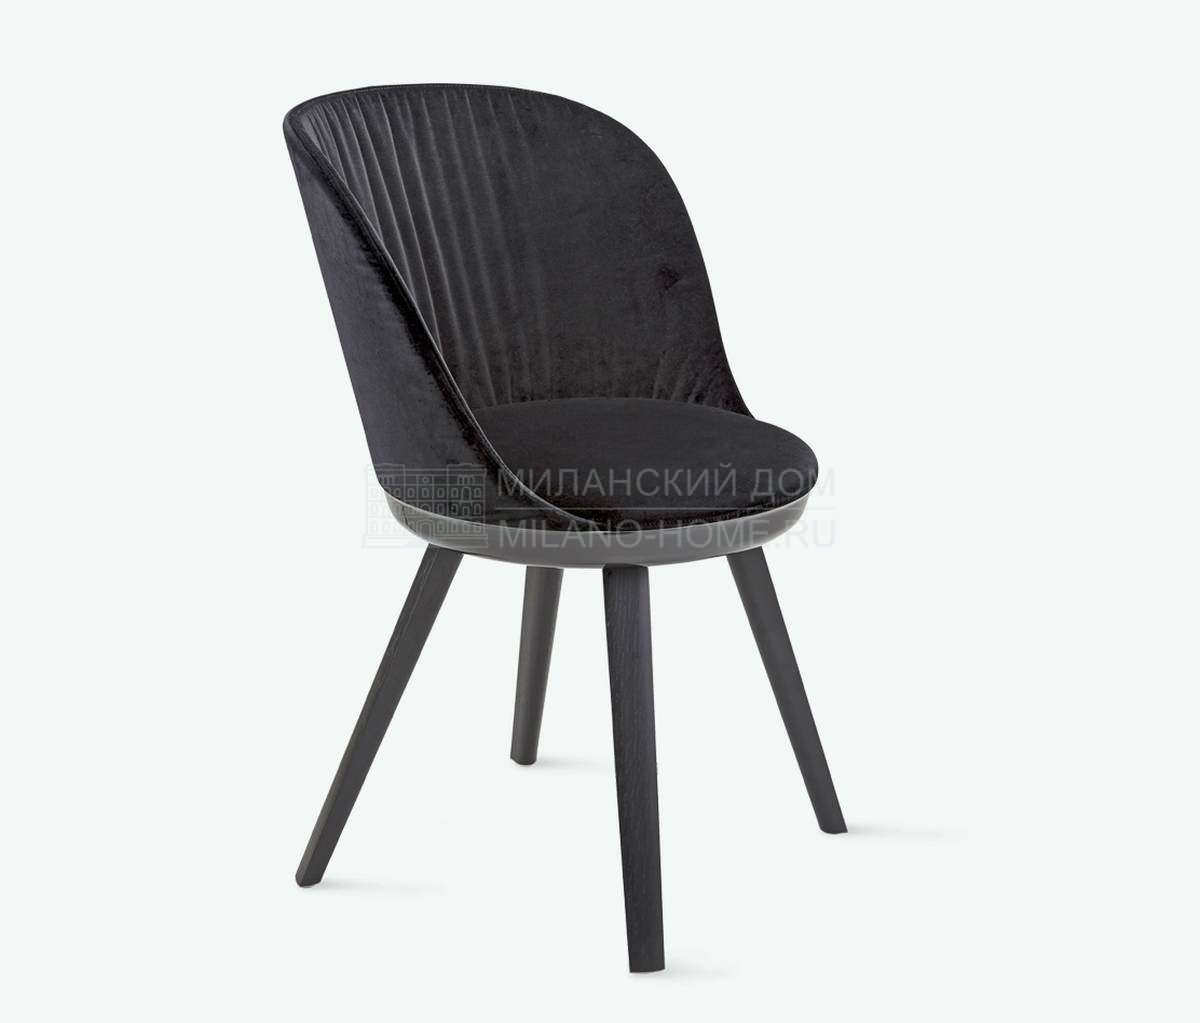 Стул Romy chair из Германии фабрики FREIFRAU